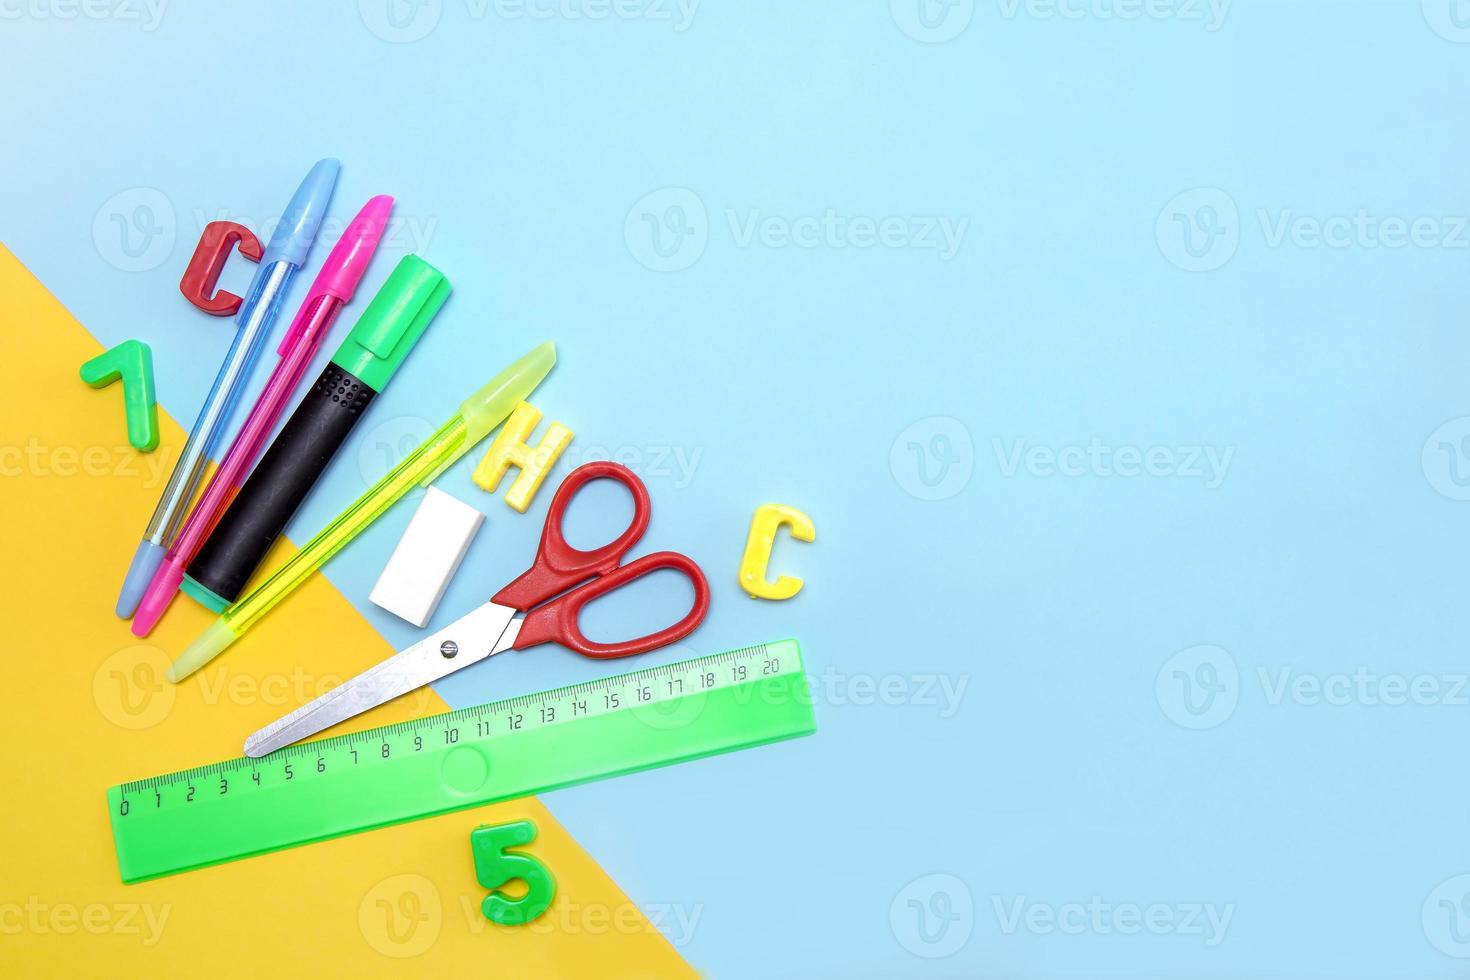 fournitures scolaires - règle, stylos, gomme, chiffres et lettres, ciseaux, marqueur sur fond jaune-bleu avec espace de copie photo